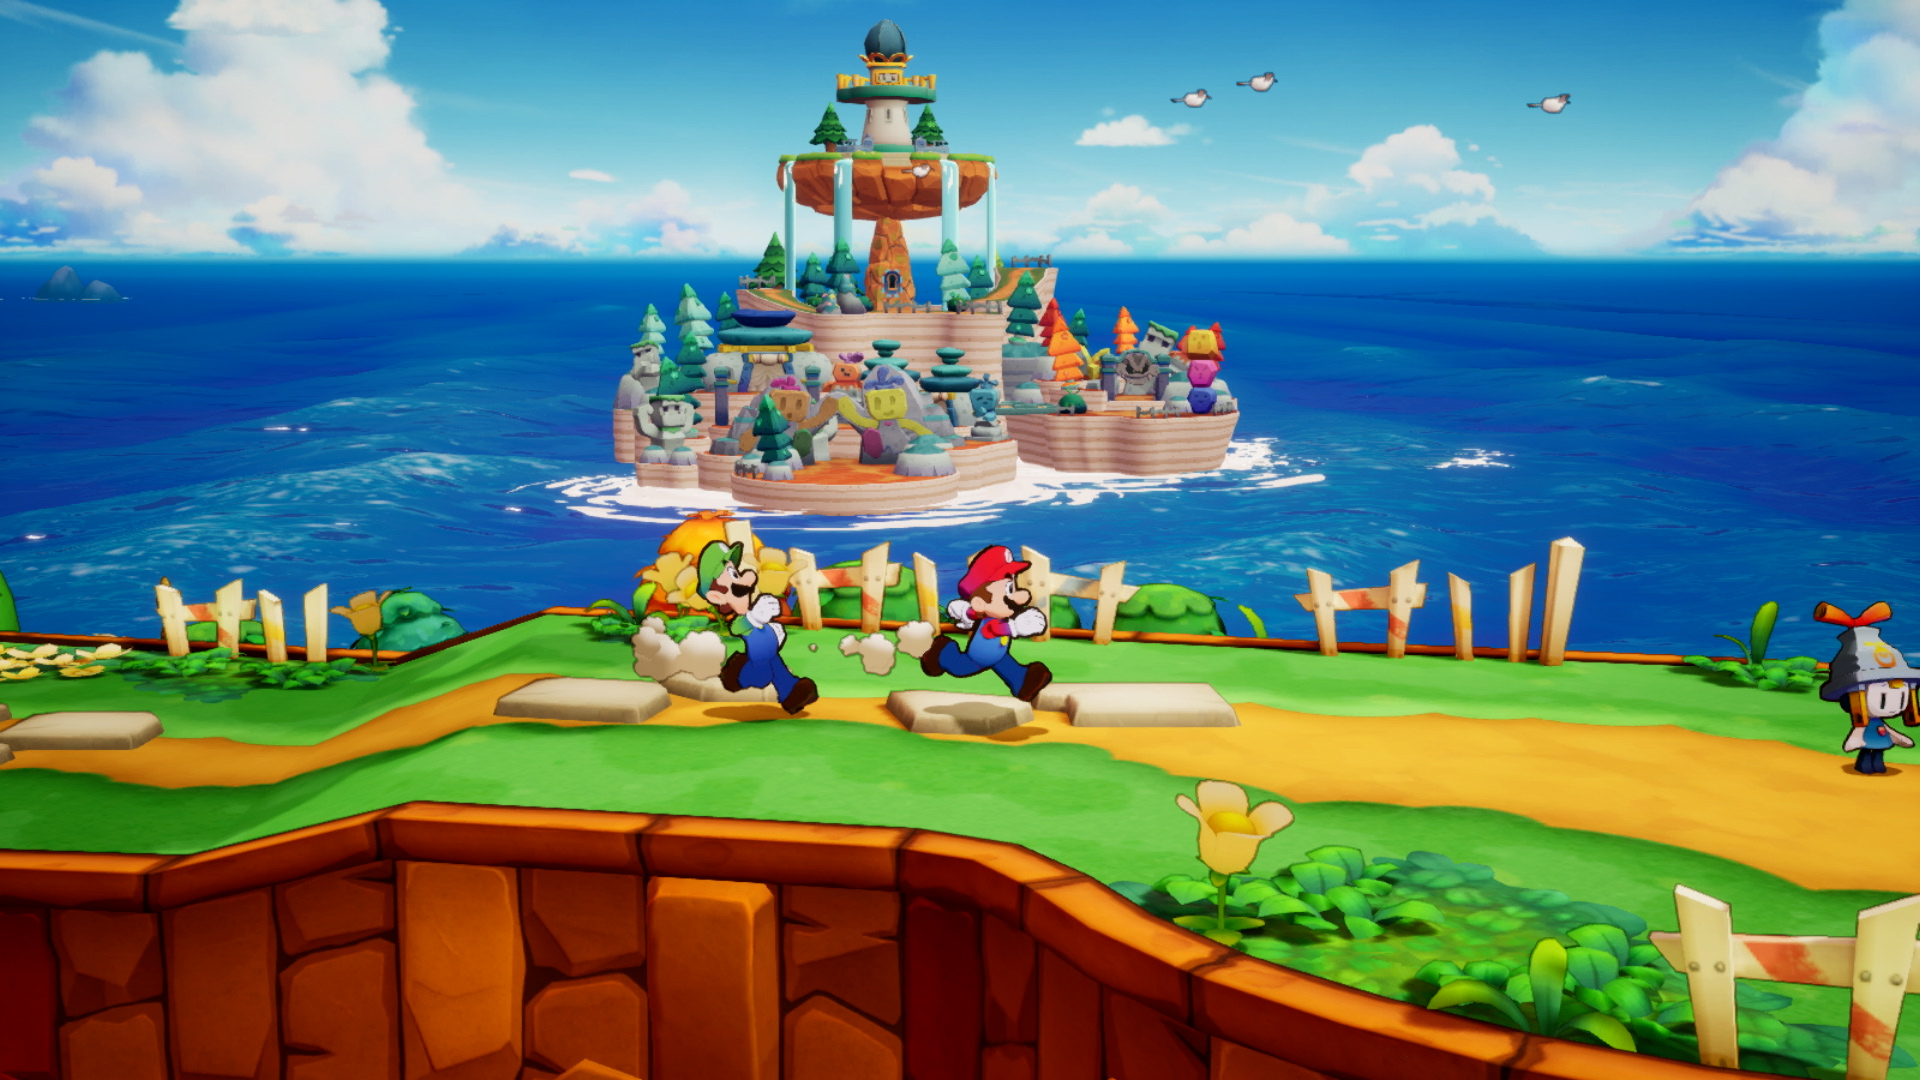 Mario et luigi l epopee fraternelle screenshot 1 1